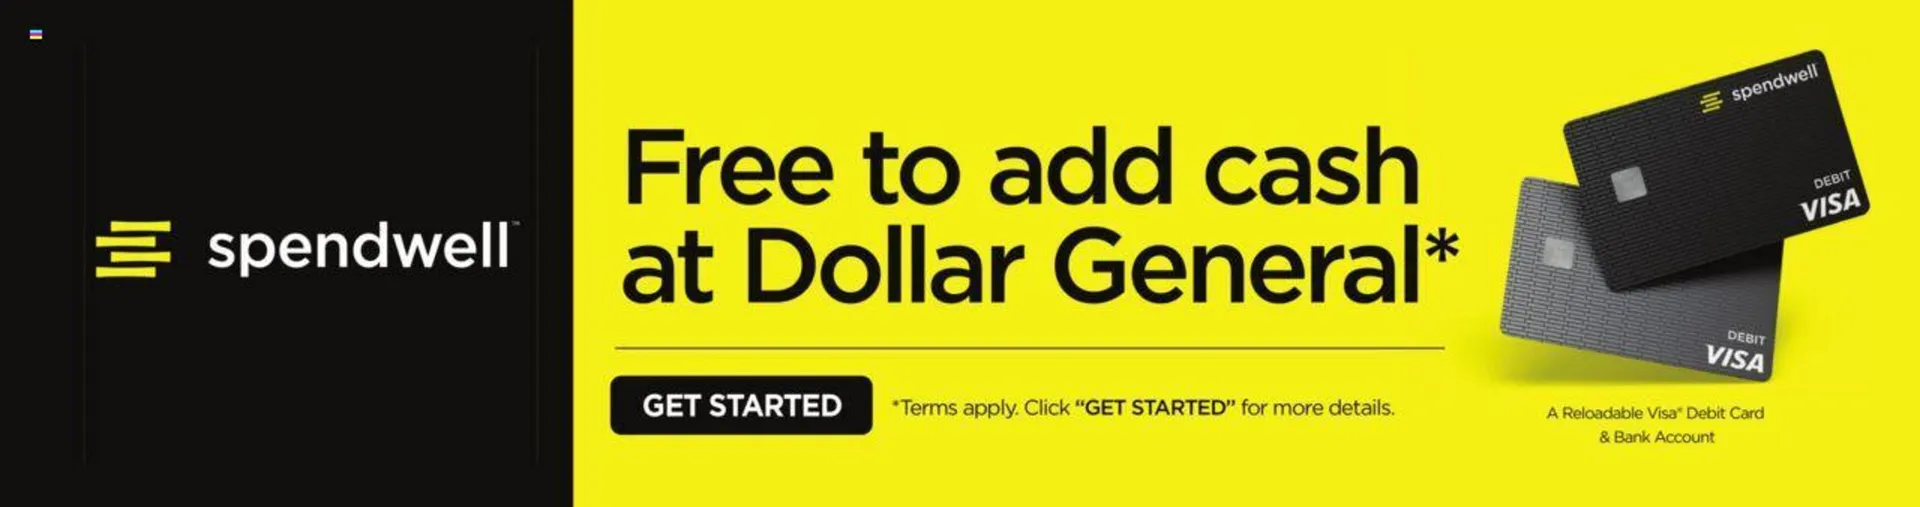 Dollar General Weekly Ad - 15